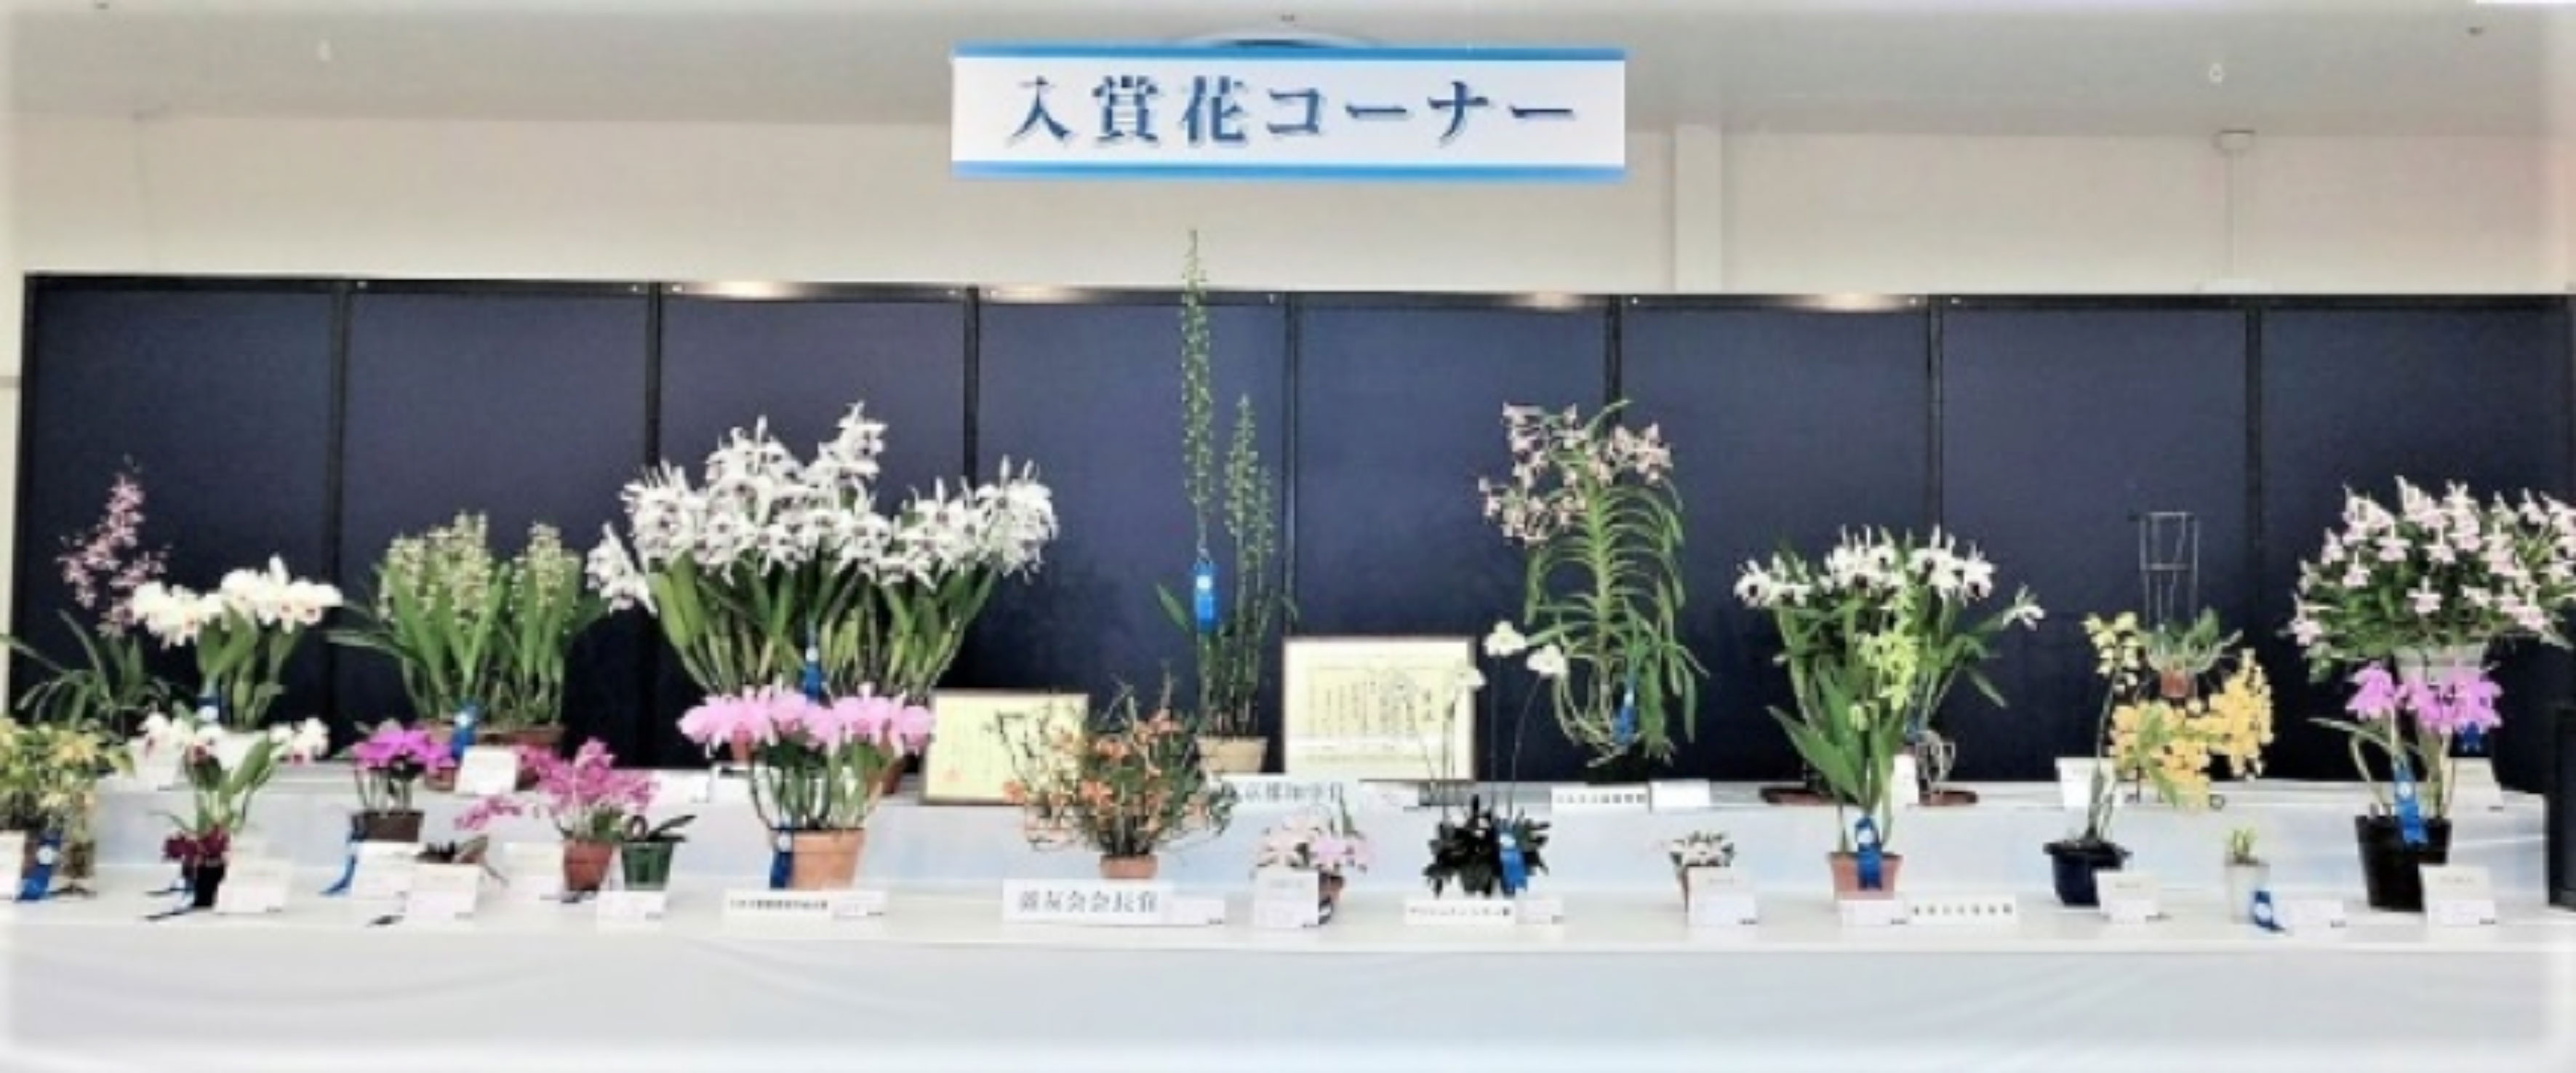 第57回蘭友会らん展インサンシャインシティの入賞花コーナー